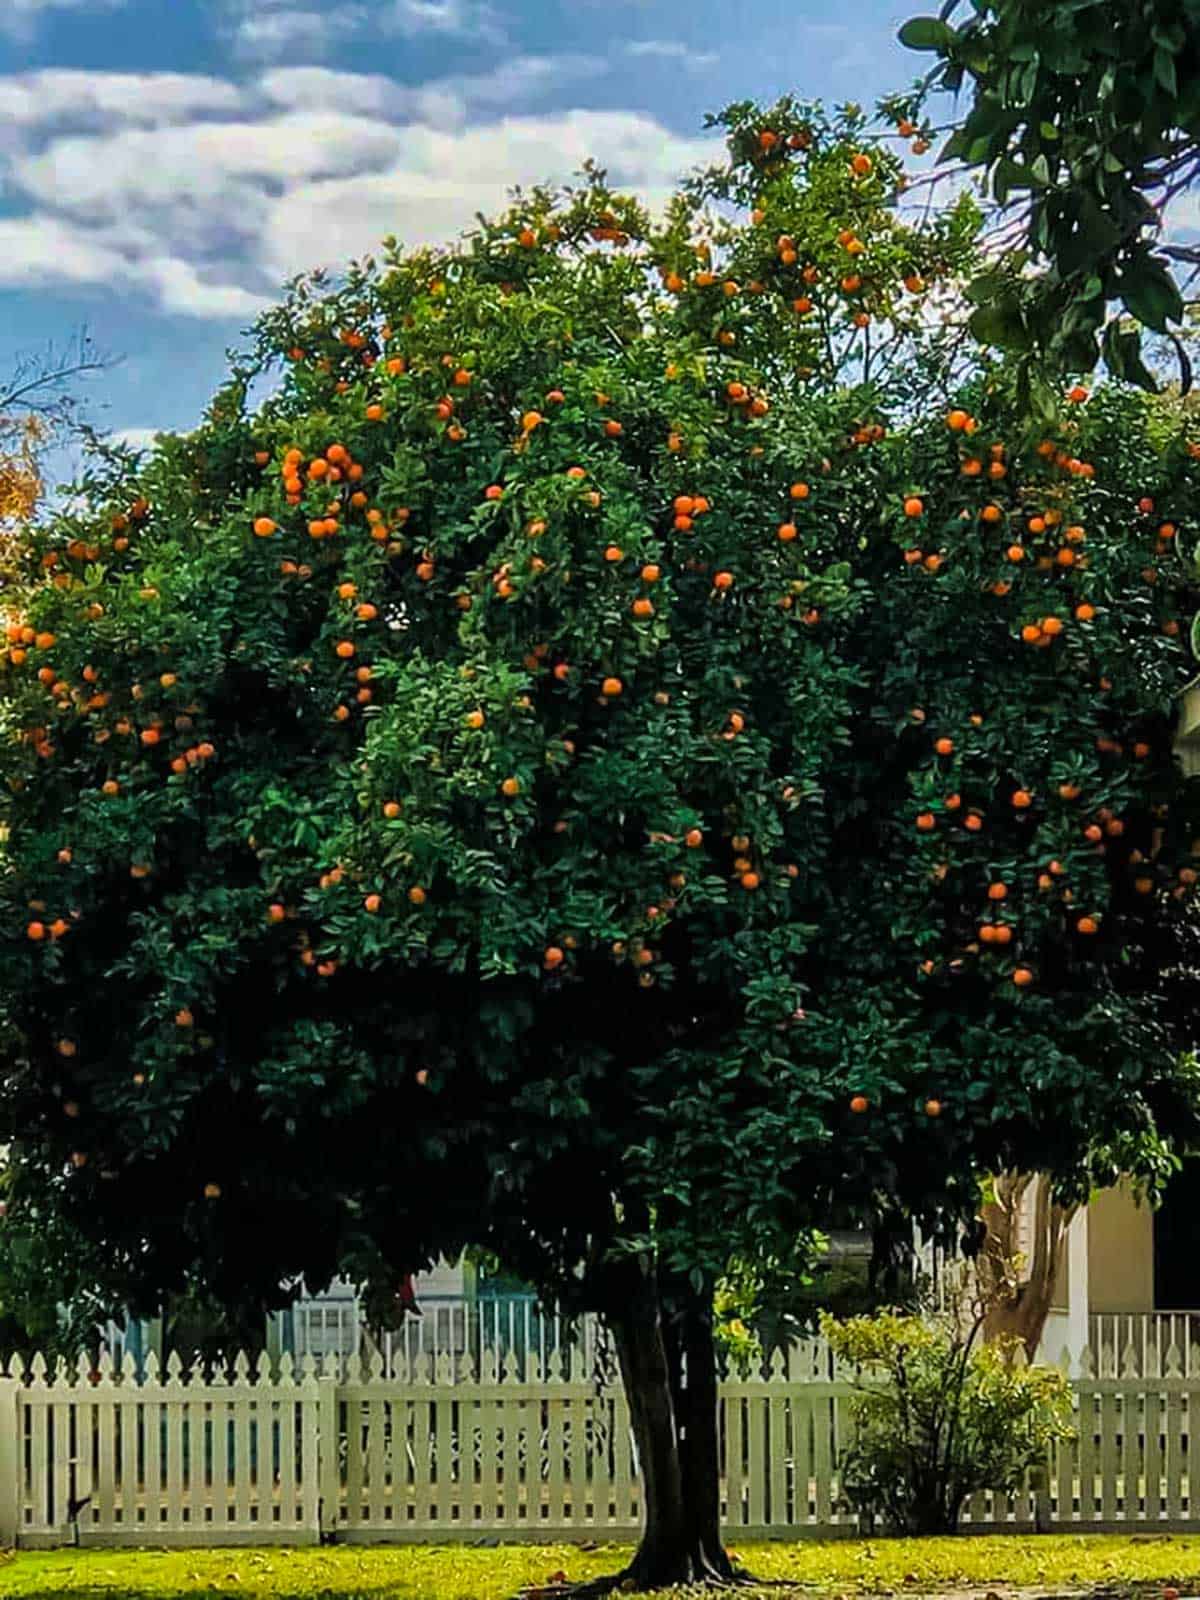 Seville orange tree in Seville square.